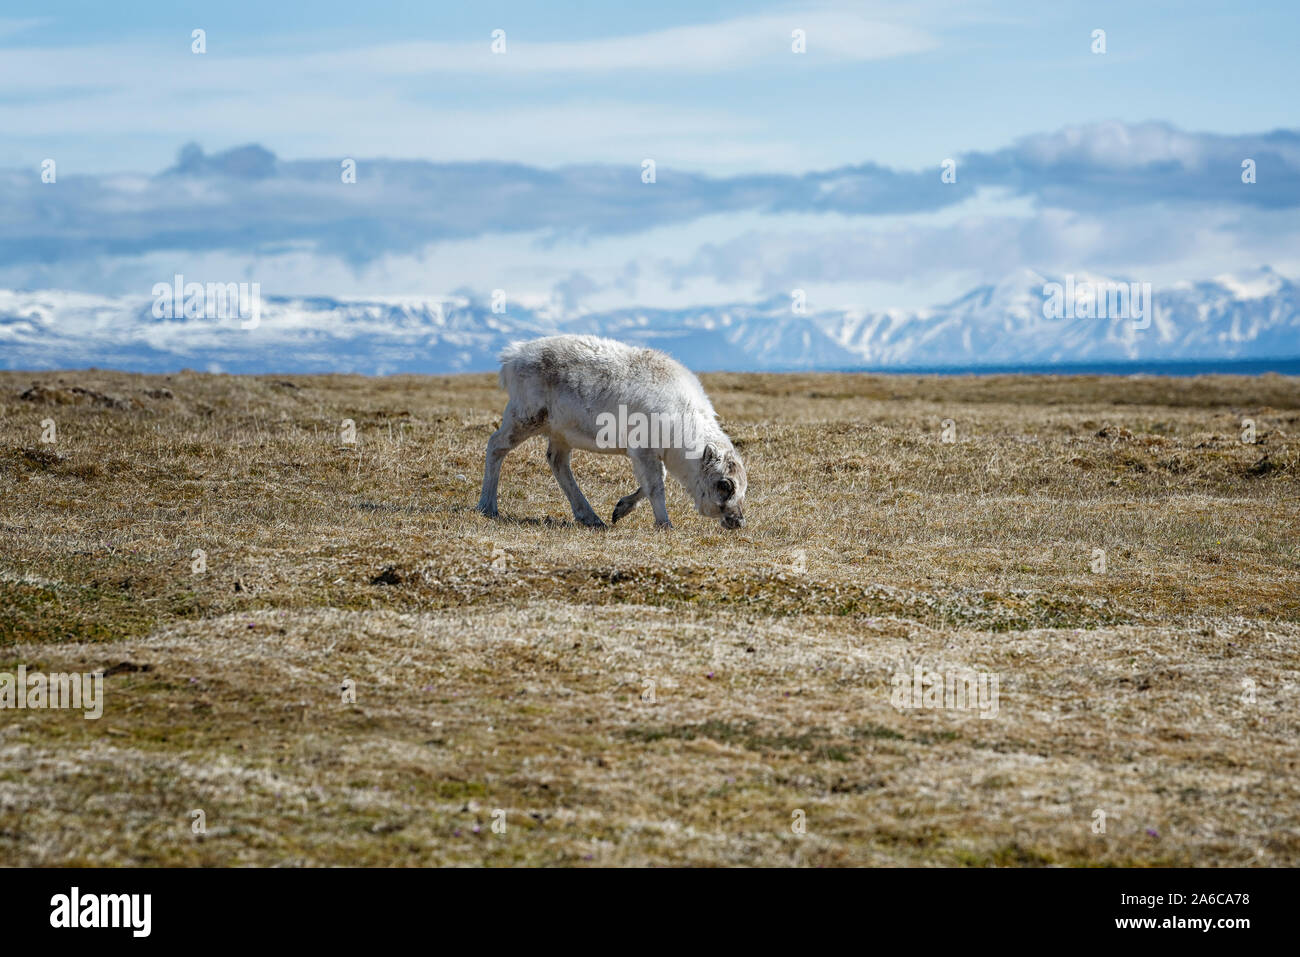 Ein Spitzbergen-Ren (Rangifer tarandus platyrhynchus) in der Tundra, Spitzbergen, Norwegen. A Svalbard reindeer feeding on tundra vegetation, Norway Stock Photo